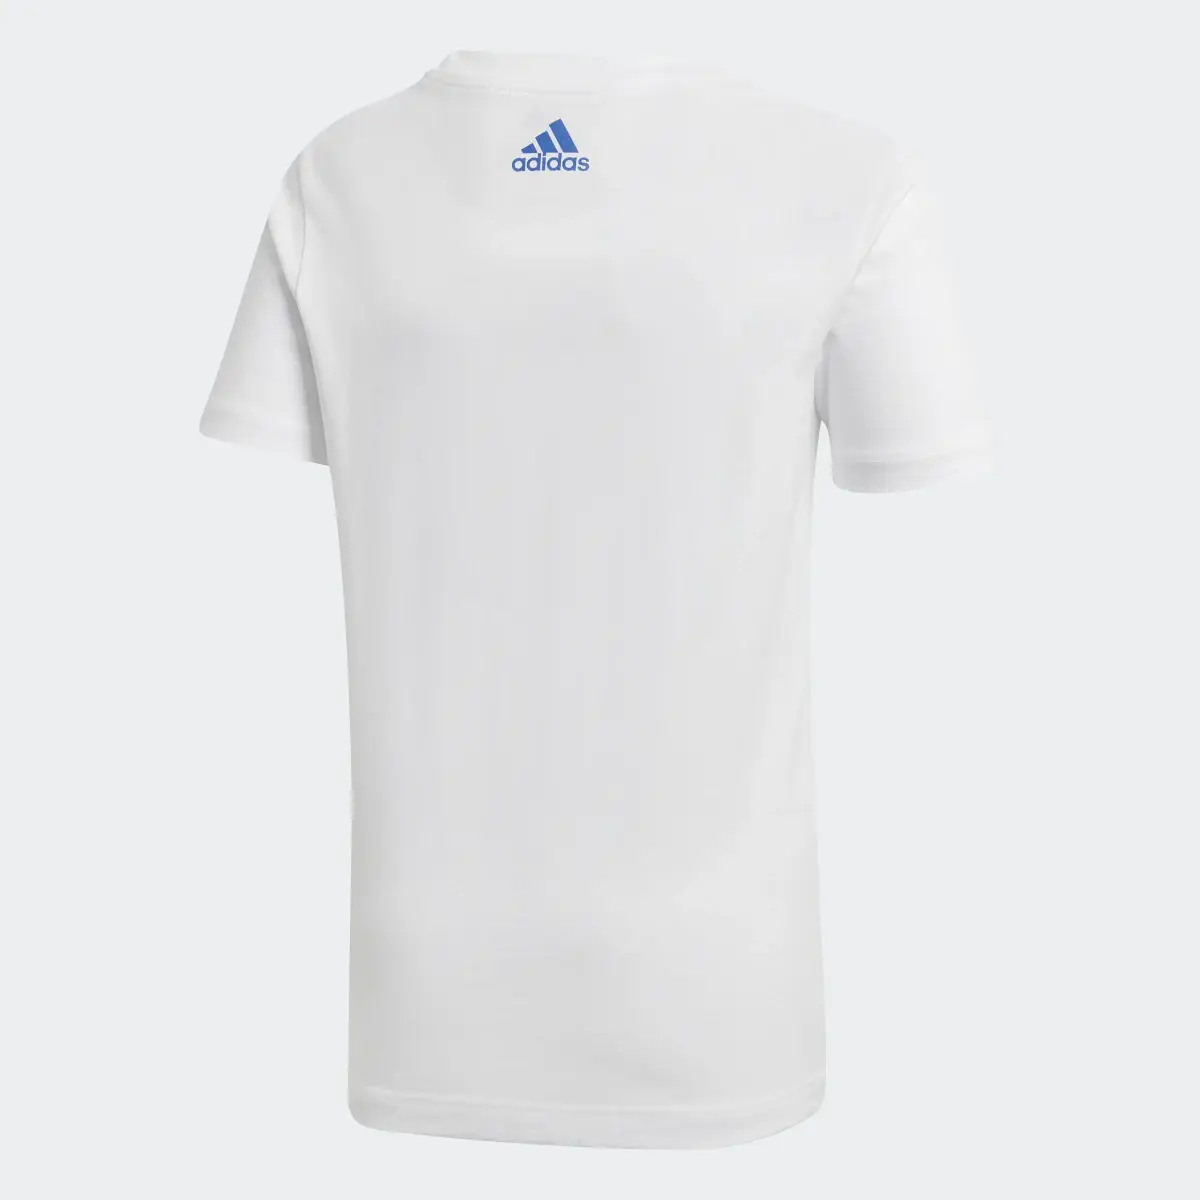 Adidas Graphic Tişört. 2